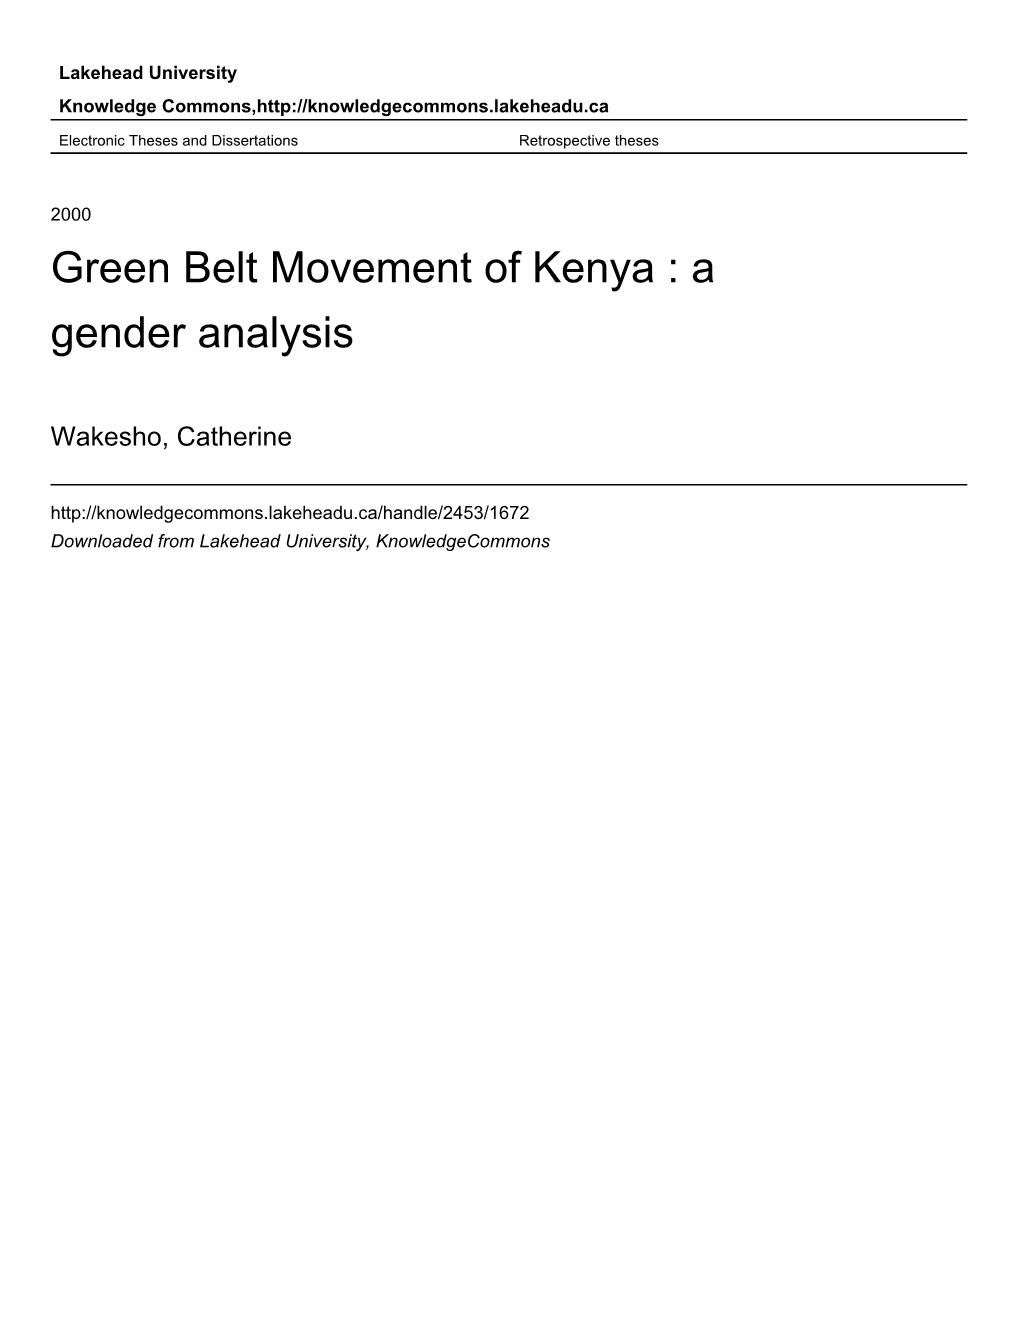 Green Belt Movement of Kenya : a Gender Analysis